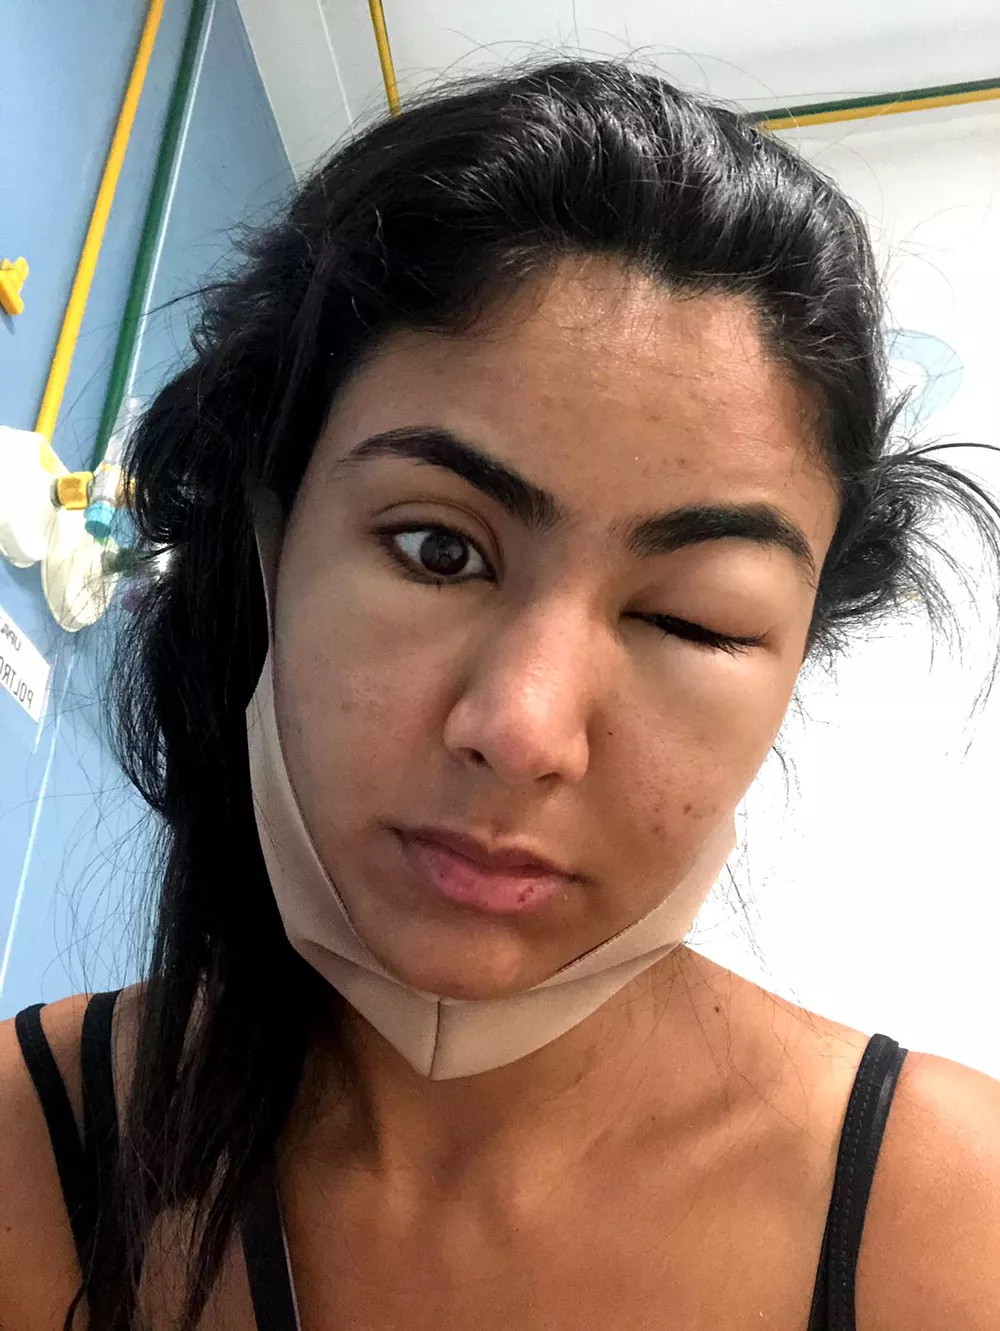 ideiasnutritivas.com - Estudante viraliza ao compartilhar como ficou deformado seu rosto após comer camarão em Copacabana